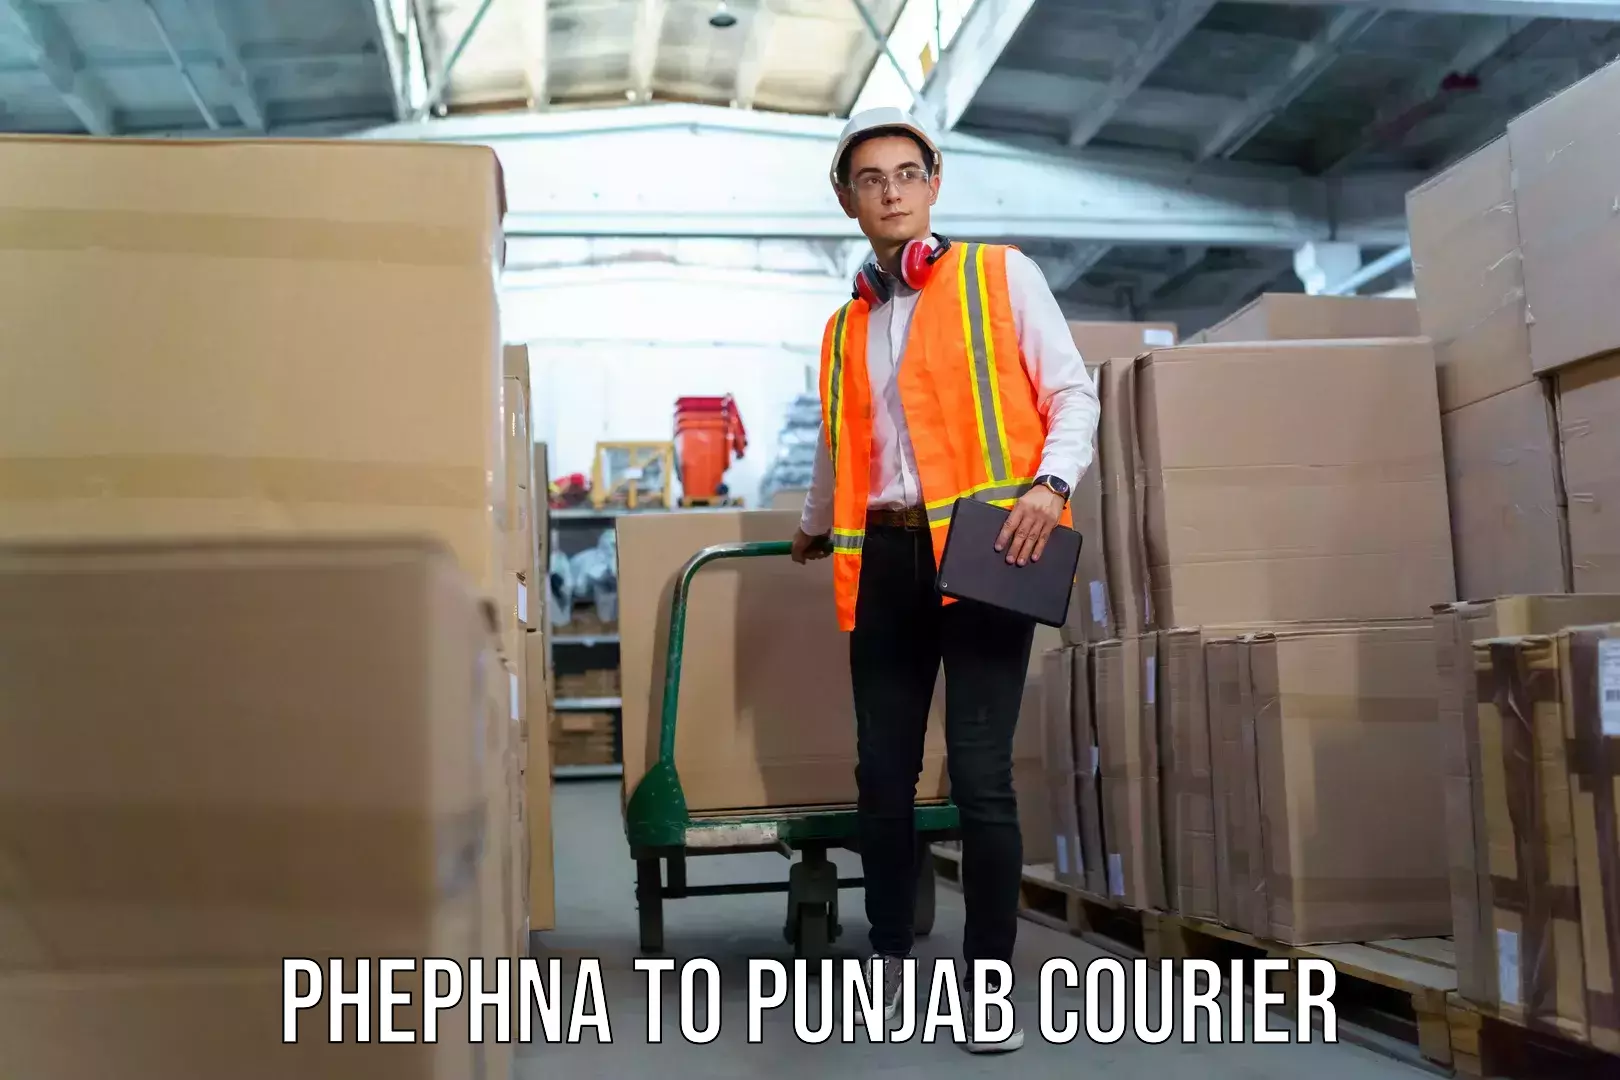 Baggage transport management Phephna to Punjab